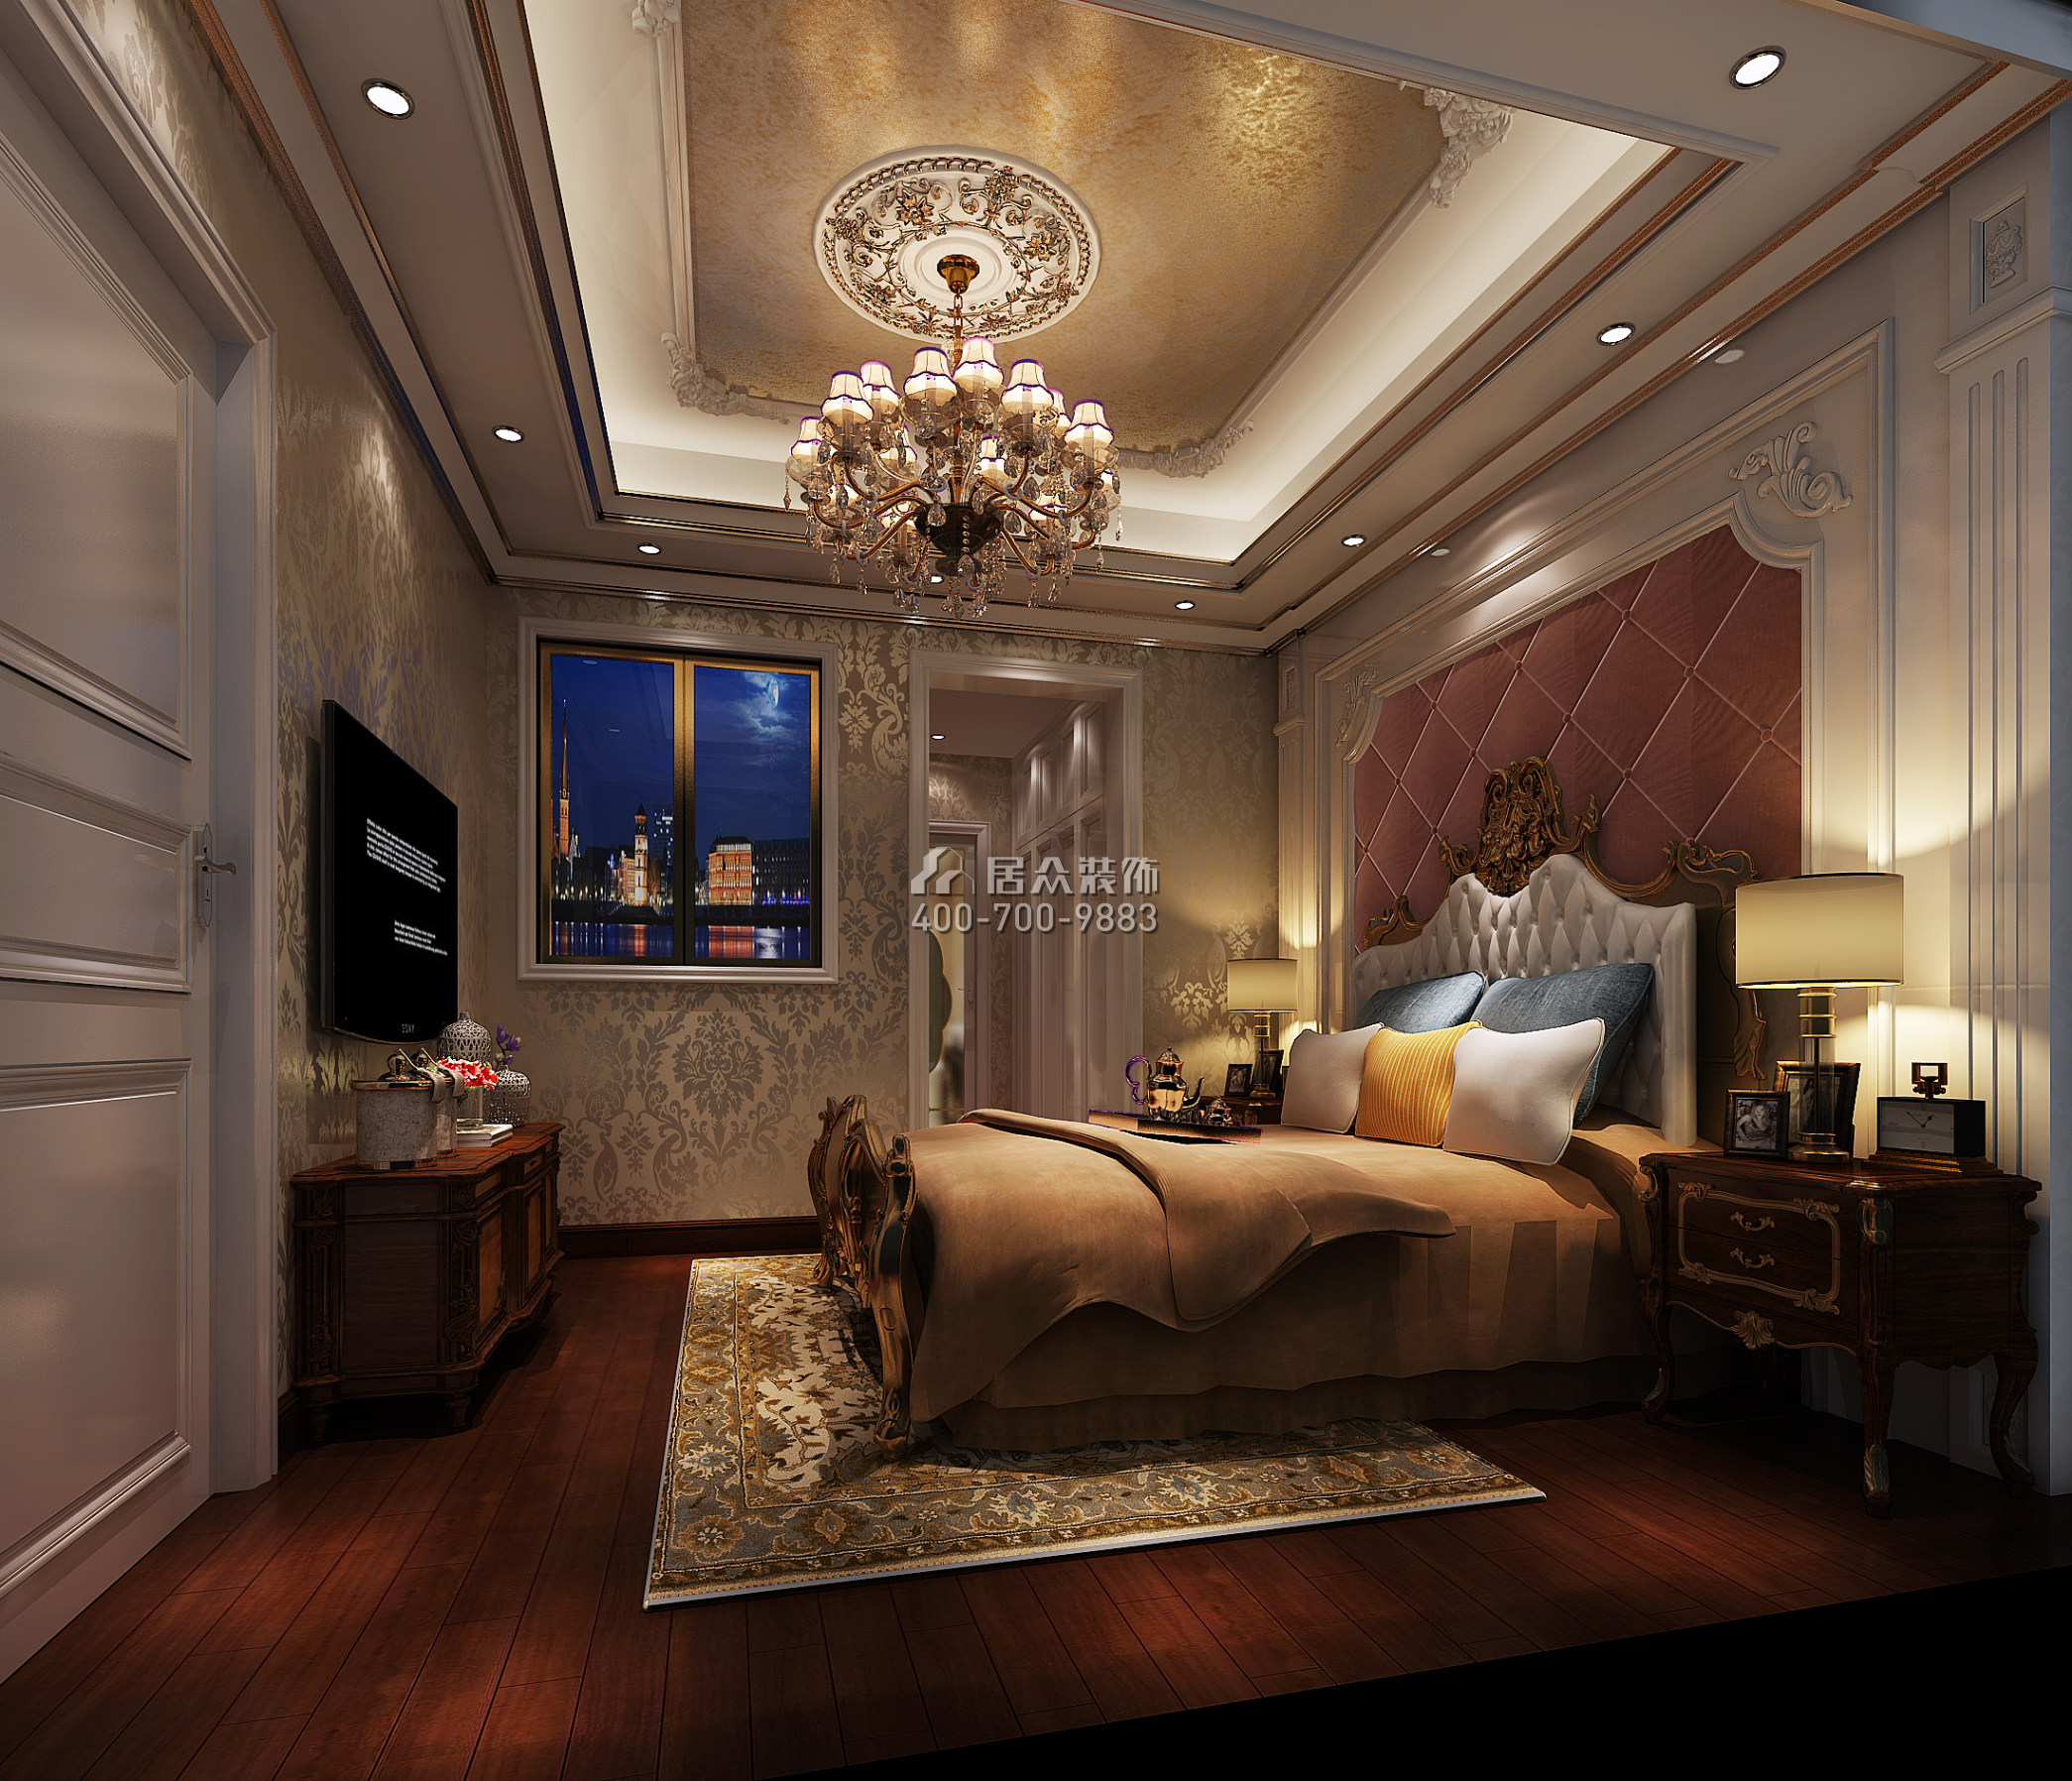 雅居樂雍華廷260平方米歐式風格別墅戶型臥室裝修效果圖